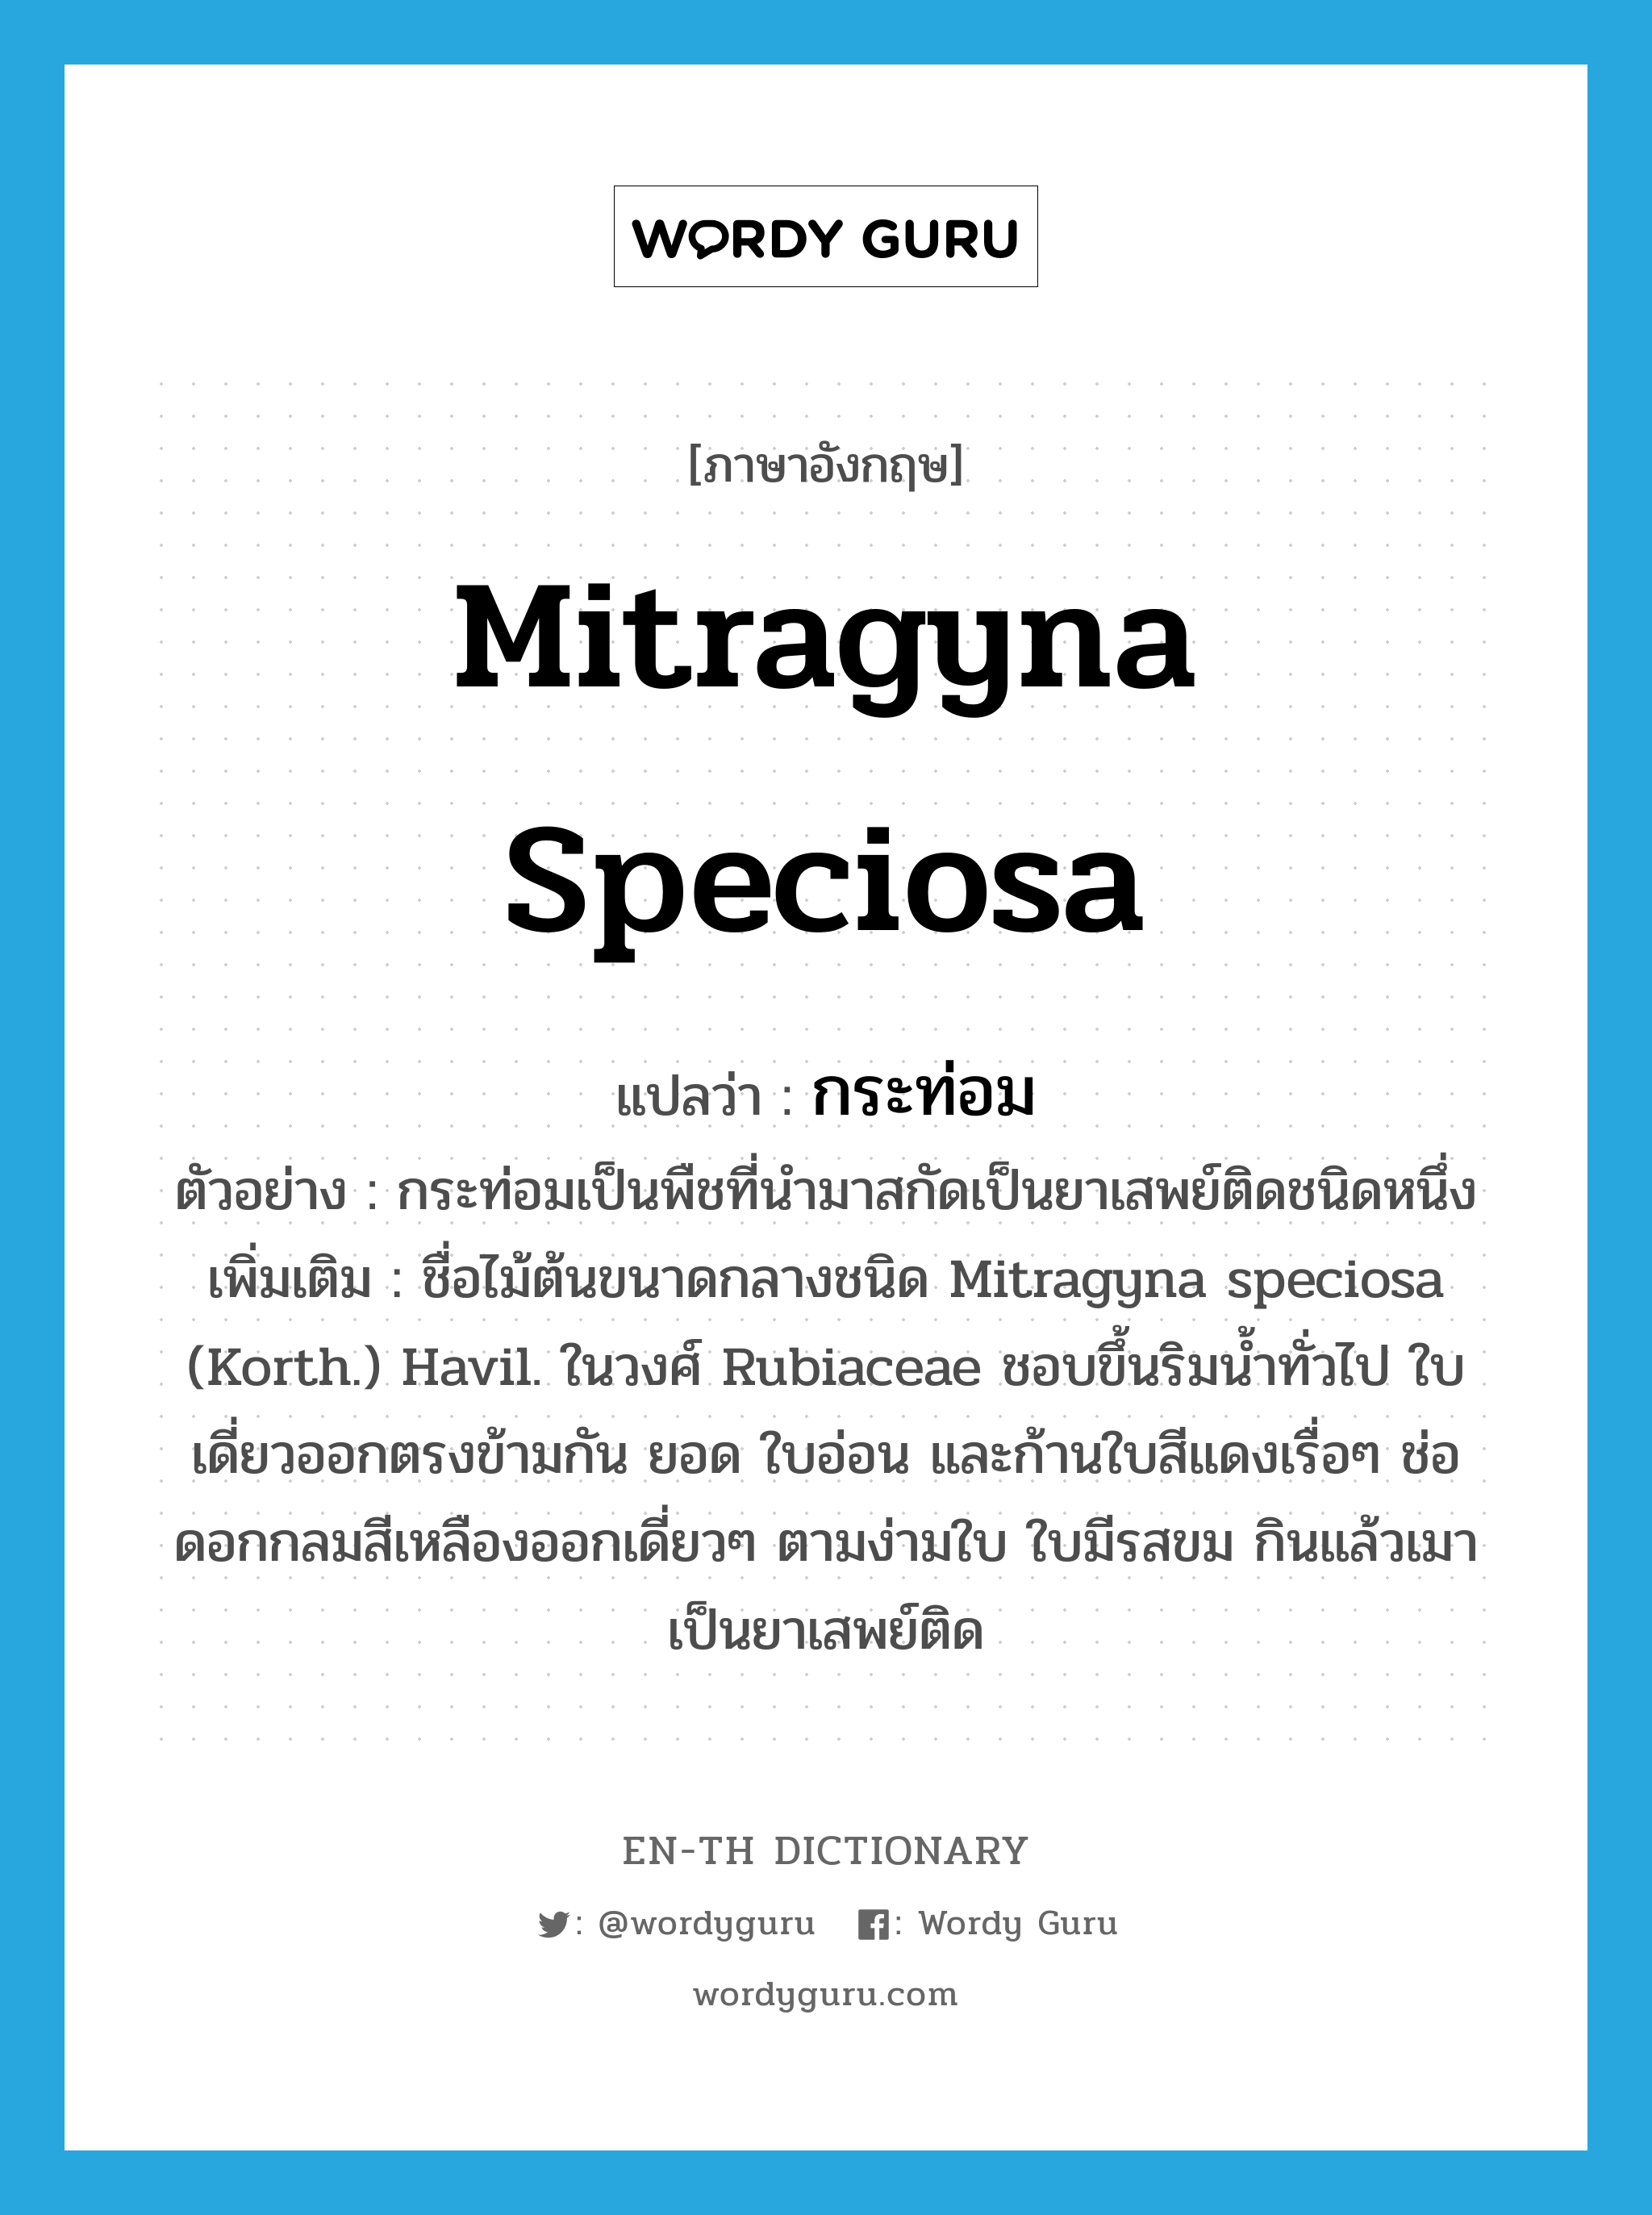 Mitragyna speciosa แปลว่า?, คำศัพท์ภาษาอังกฤษ Mitragyna speciosa แปลว่า กระท่อม ประเภท N ตัวอย่าง กระท่อมเป็นพืชที่นำมาสกัดเป็นยาเสพย์ติดชนิดหนึ่ง เพิ่มเติม ชื่อไม้ต้นขนาดกลางชนิด Mitragyna speciosa (Korth.) Havil. ในวงศ์ Rubiaceae ชอบขึ้นริมน้ำทั่วไป ใบเดี่ยวออกตรงข้ามกัน ยอด ใบอ่อน และก้านใบสีแดงเรื่อๆ ช่อดอกกลมสีเหลืองออกเดี่ยวๆ ตามง่ามใบ ใบมีรสขม กินแล้วเมา เป็นยาเสพย์ติด หมวด N